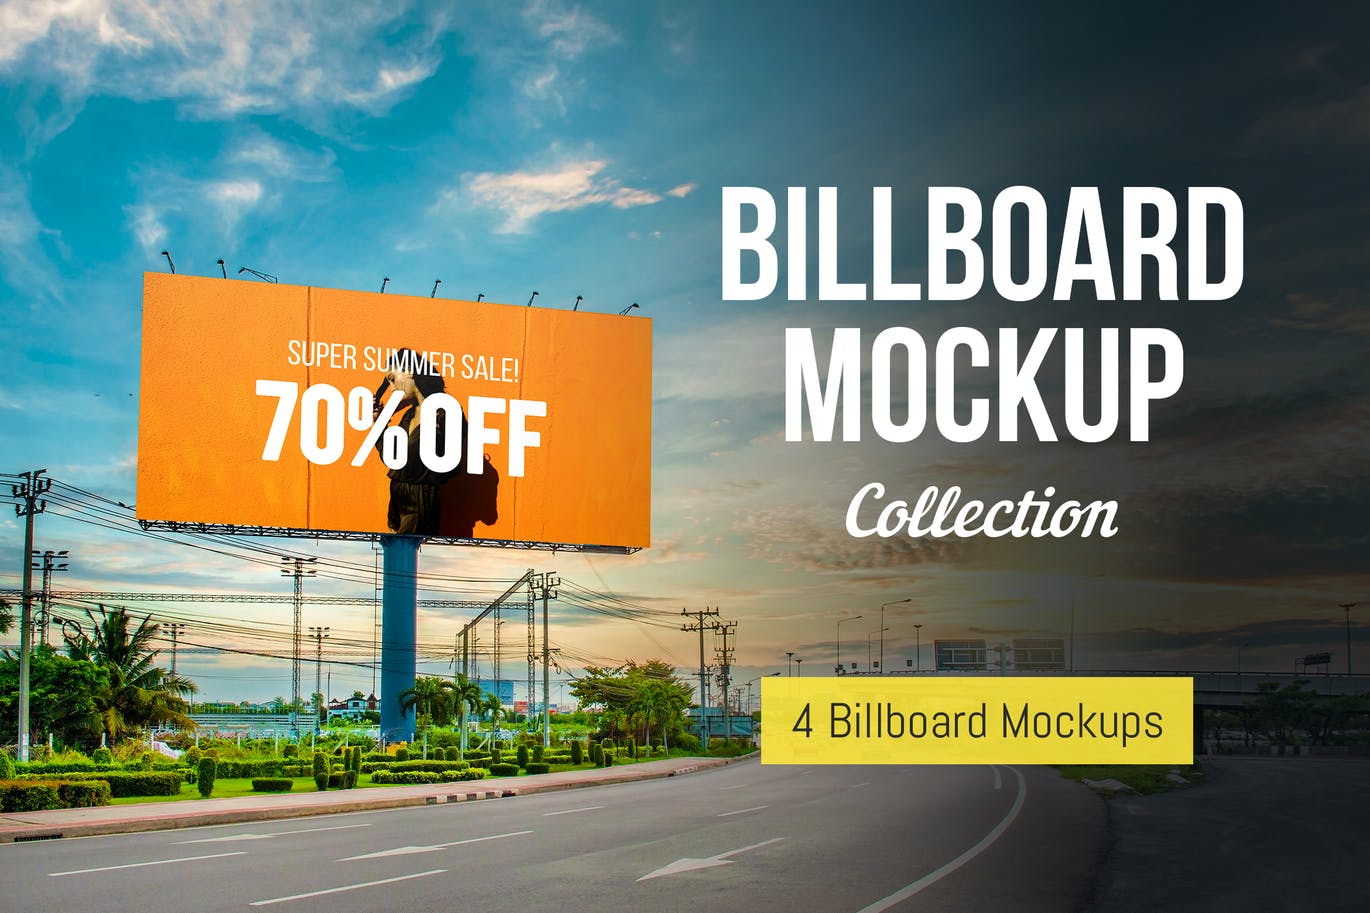 户外公路大型广告牌广告设计展示效果图样机 Advertising Billboard Mockup插图